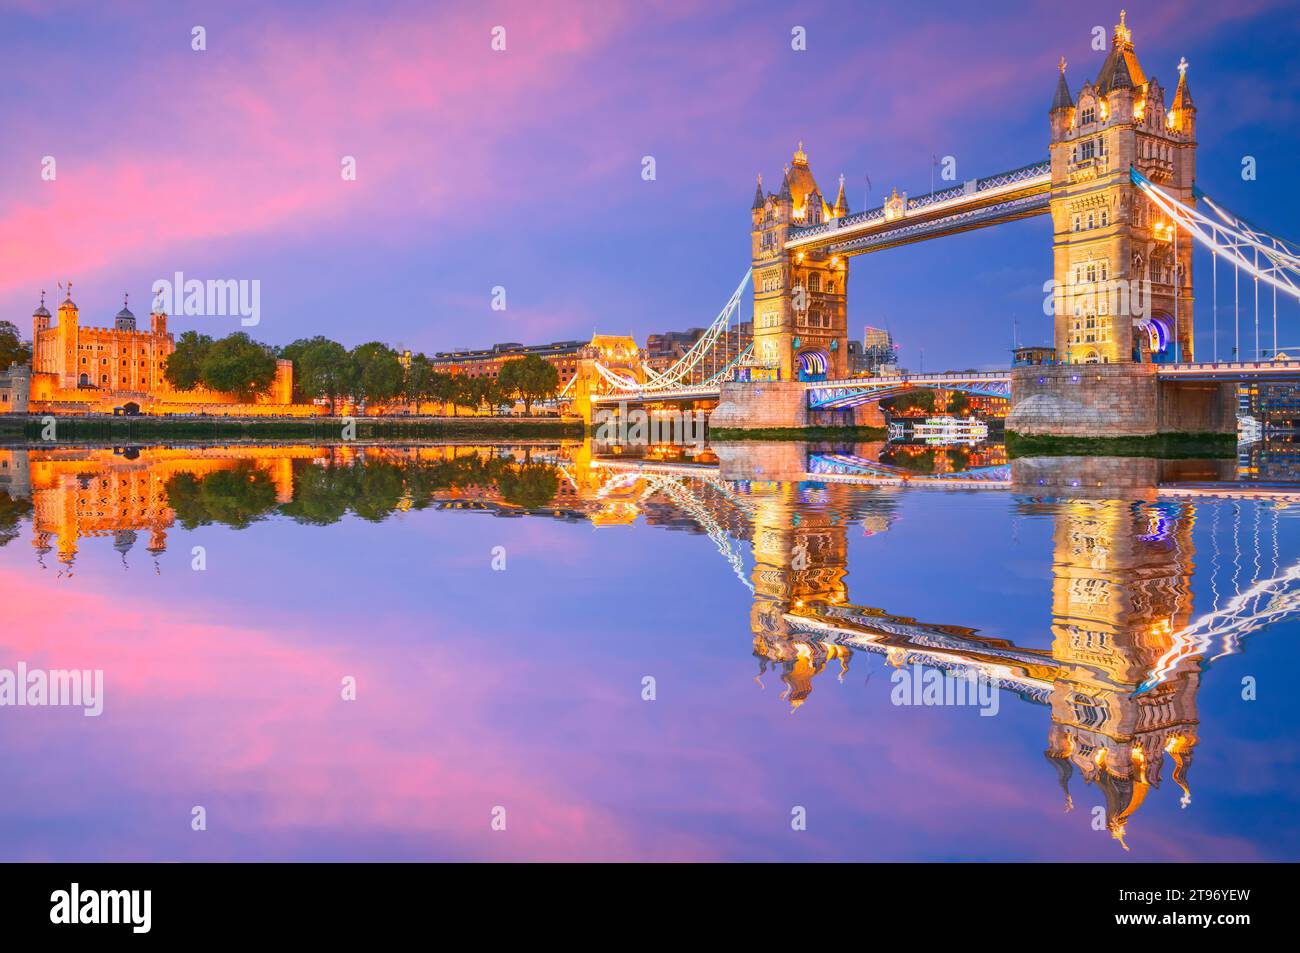 Londres, Royaume-Uni. La Tour de Londres et Tower Bridge réflexion sur la Tamise, phare de la capitale de l'Angleterre, scène illuminée au crépuscule. Banque D'Images